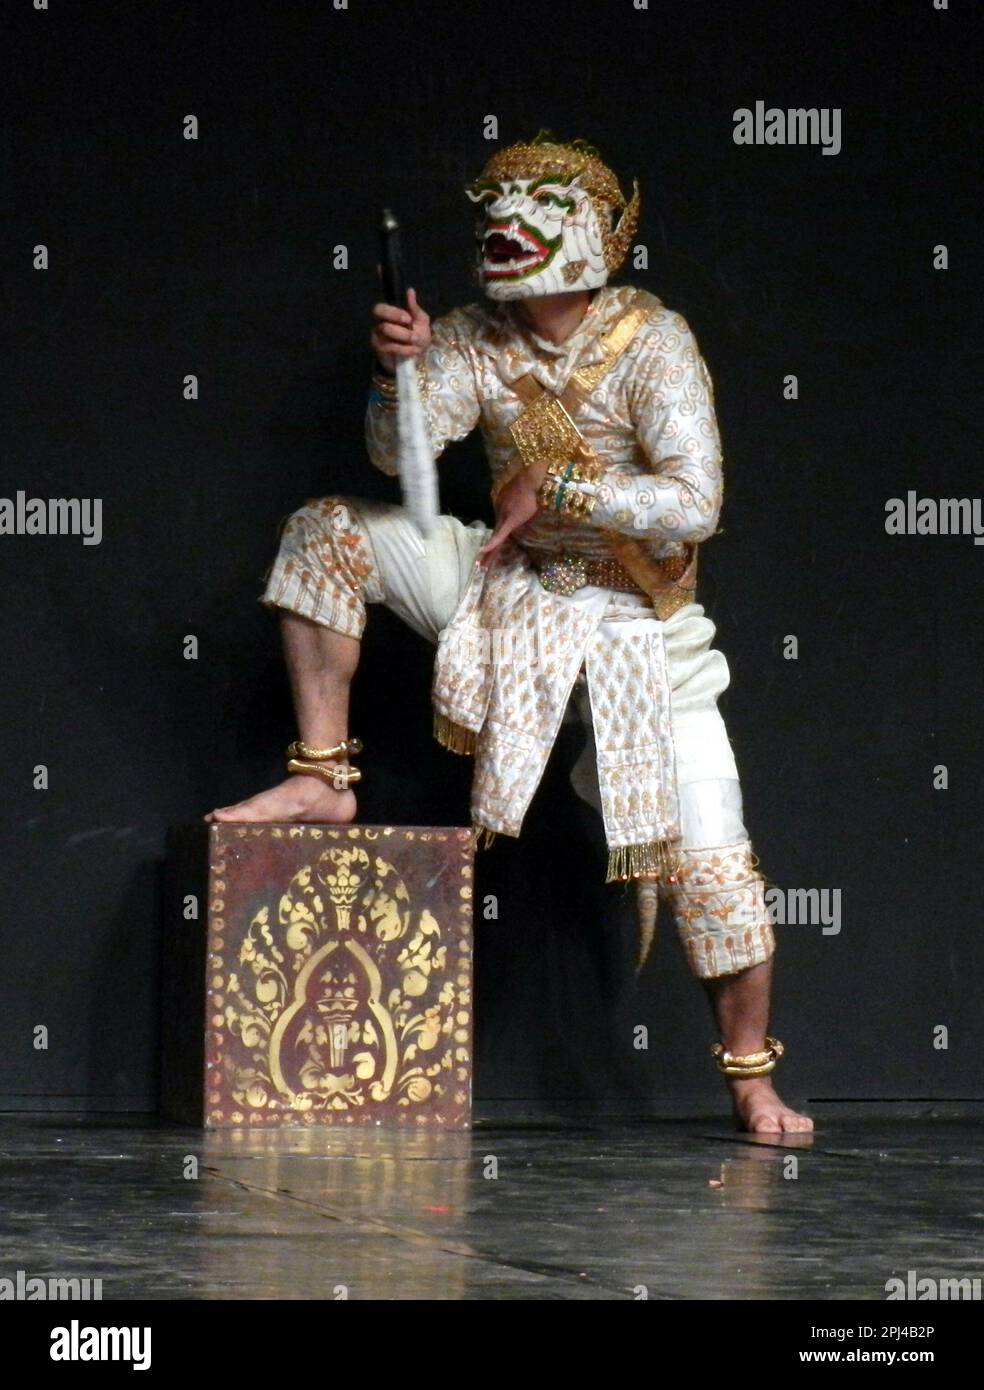 Kambodscha, Phnom Penh: Traditionelle Tanzvorstellung im Nationalmuseum, einschließlich einer Vielzahl klassischer und folkloristischer Tänze. Hanuman. Stockfoto